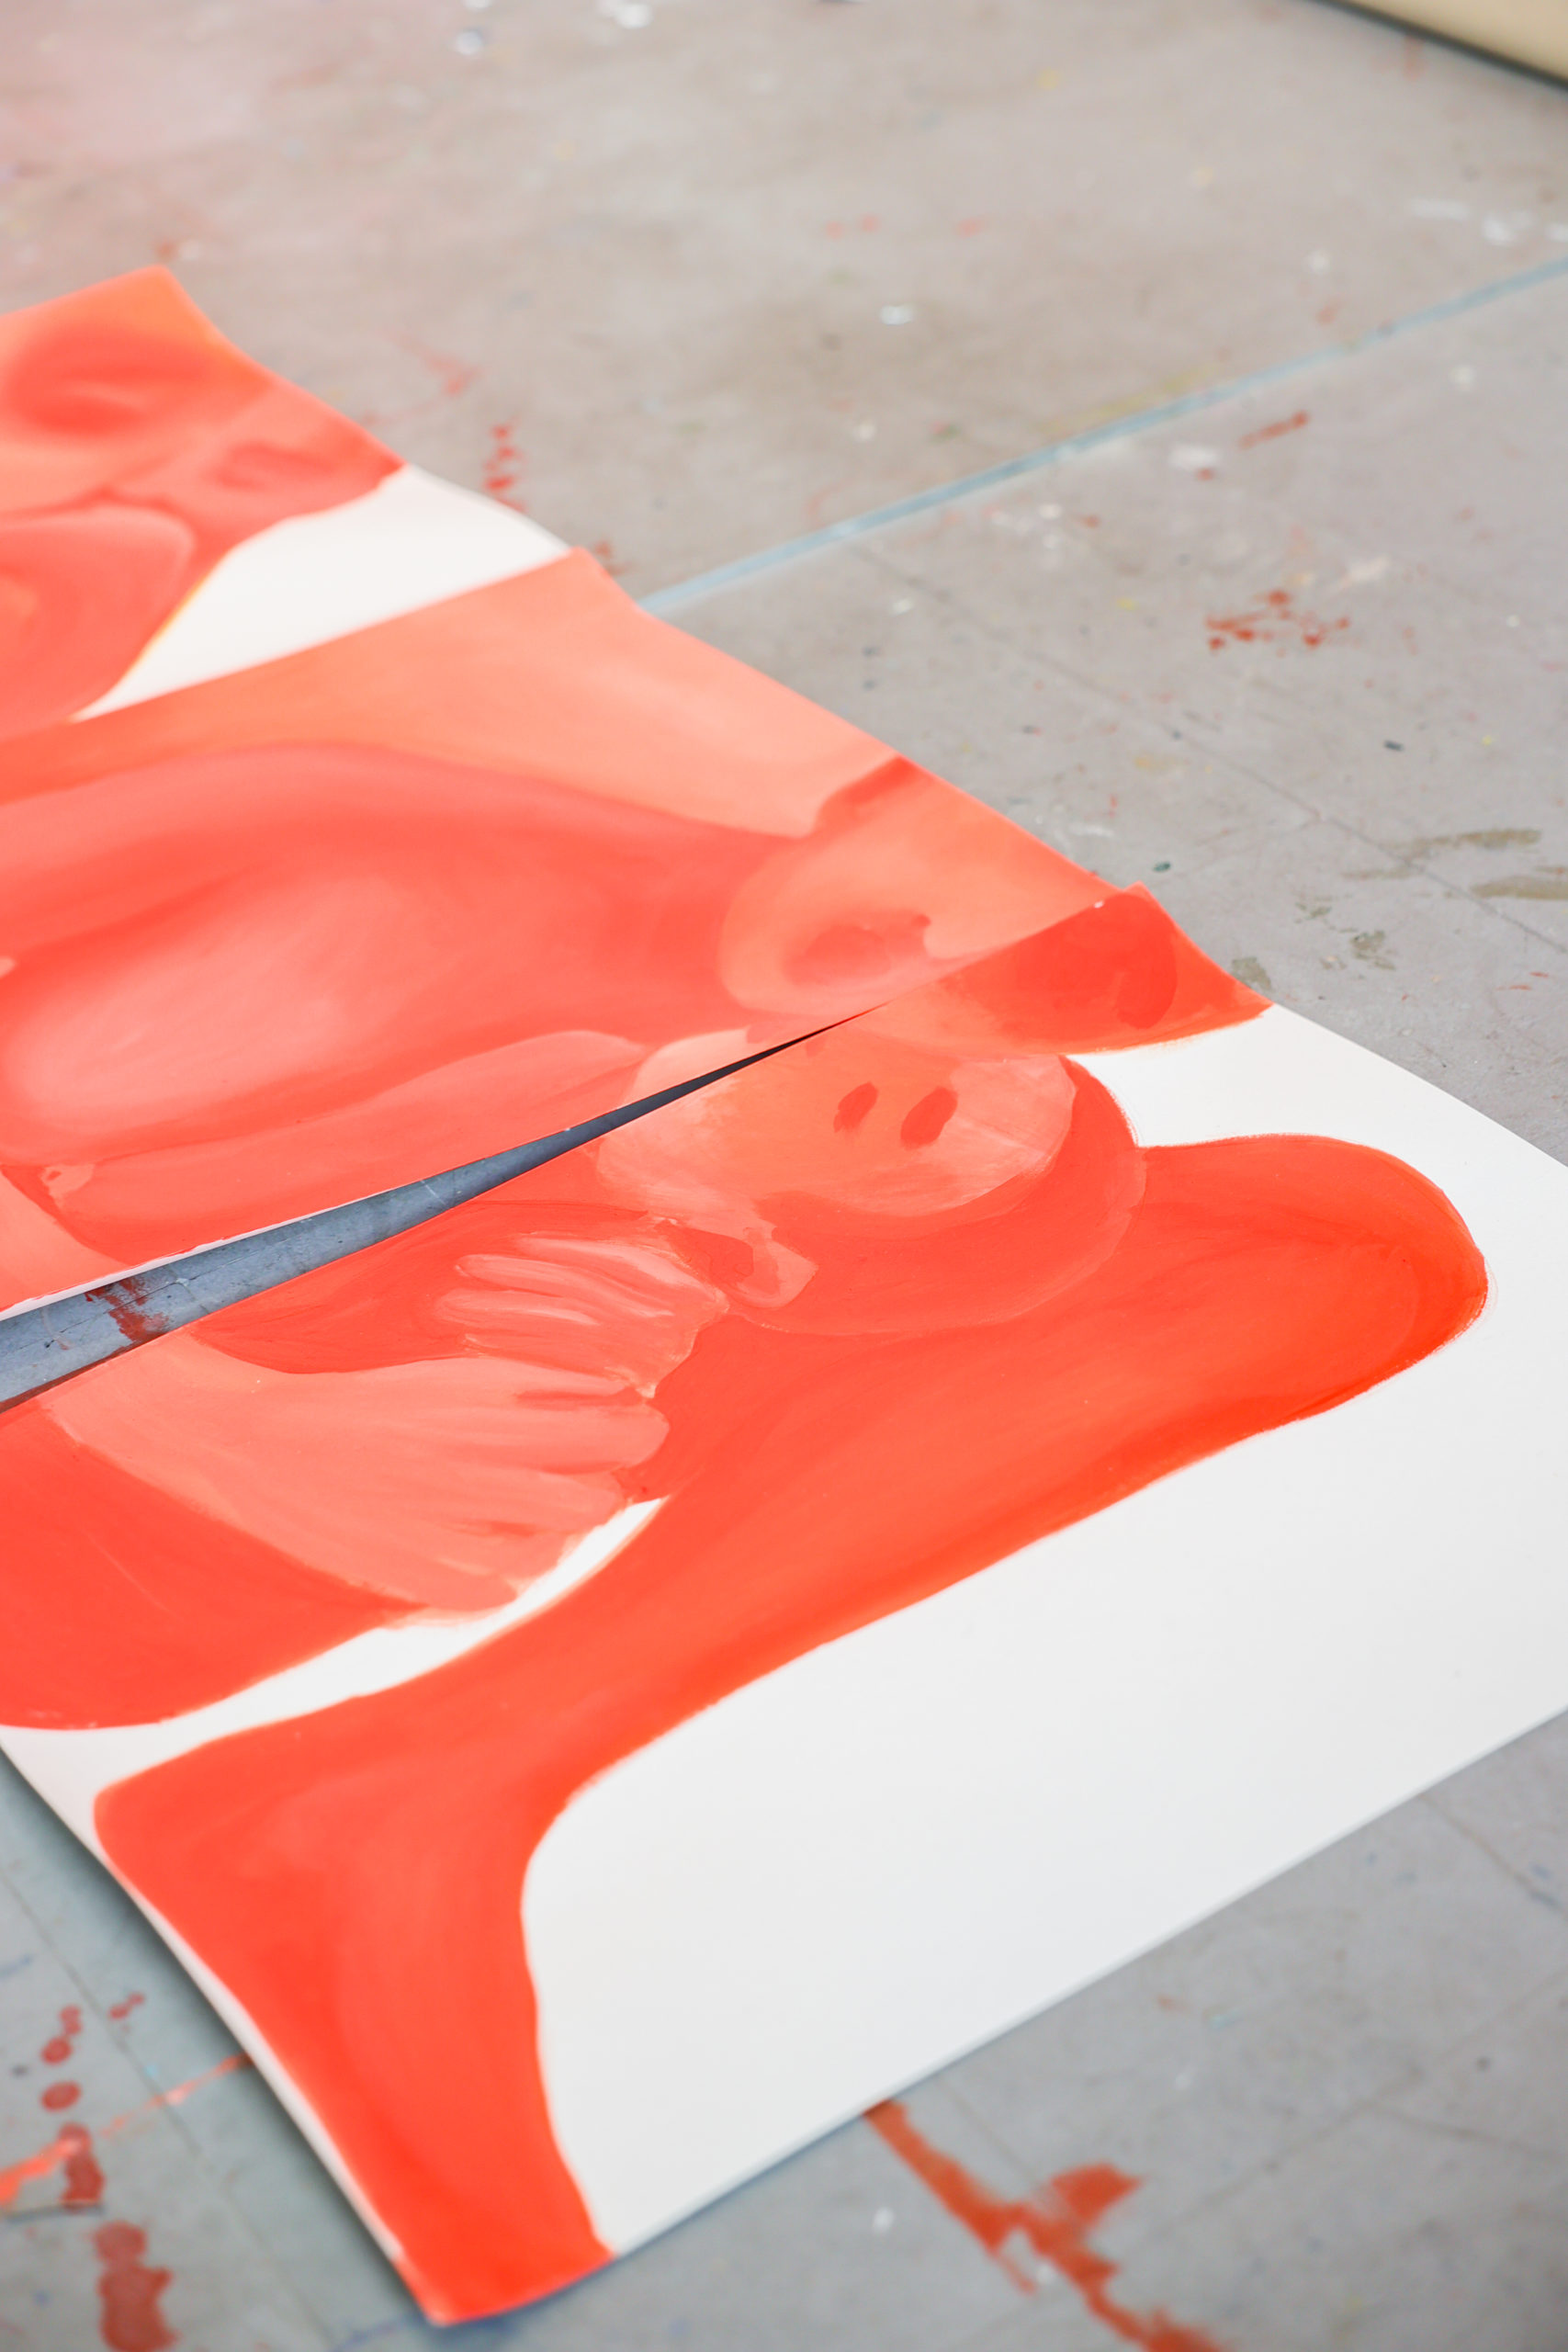 Affiches représentant les bonshommes de Camille Cottier en rouge posées au sol de son atelier